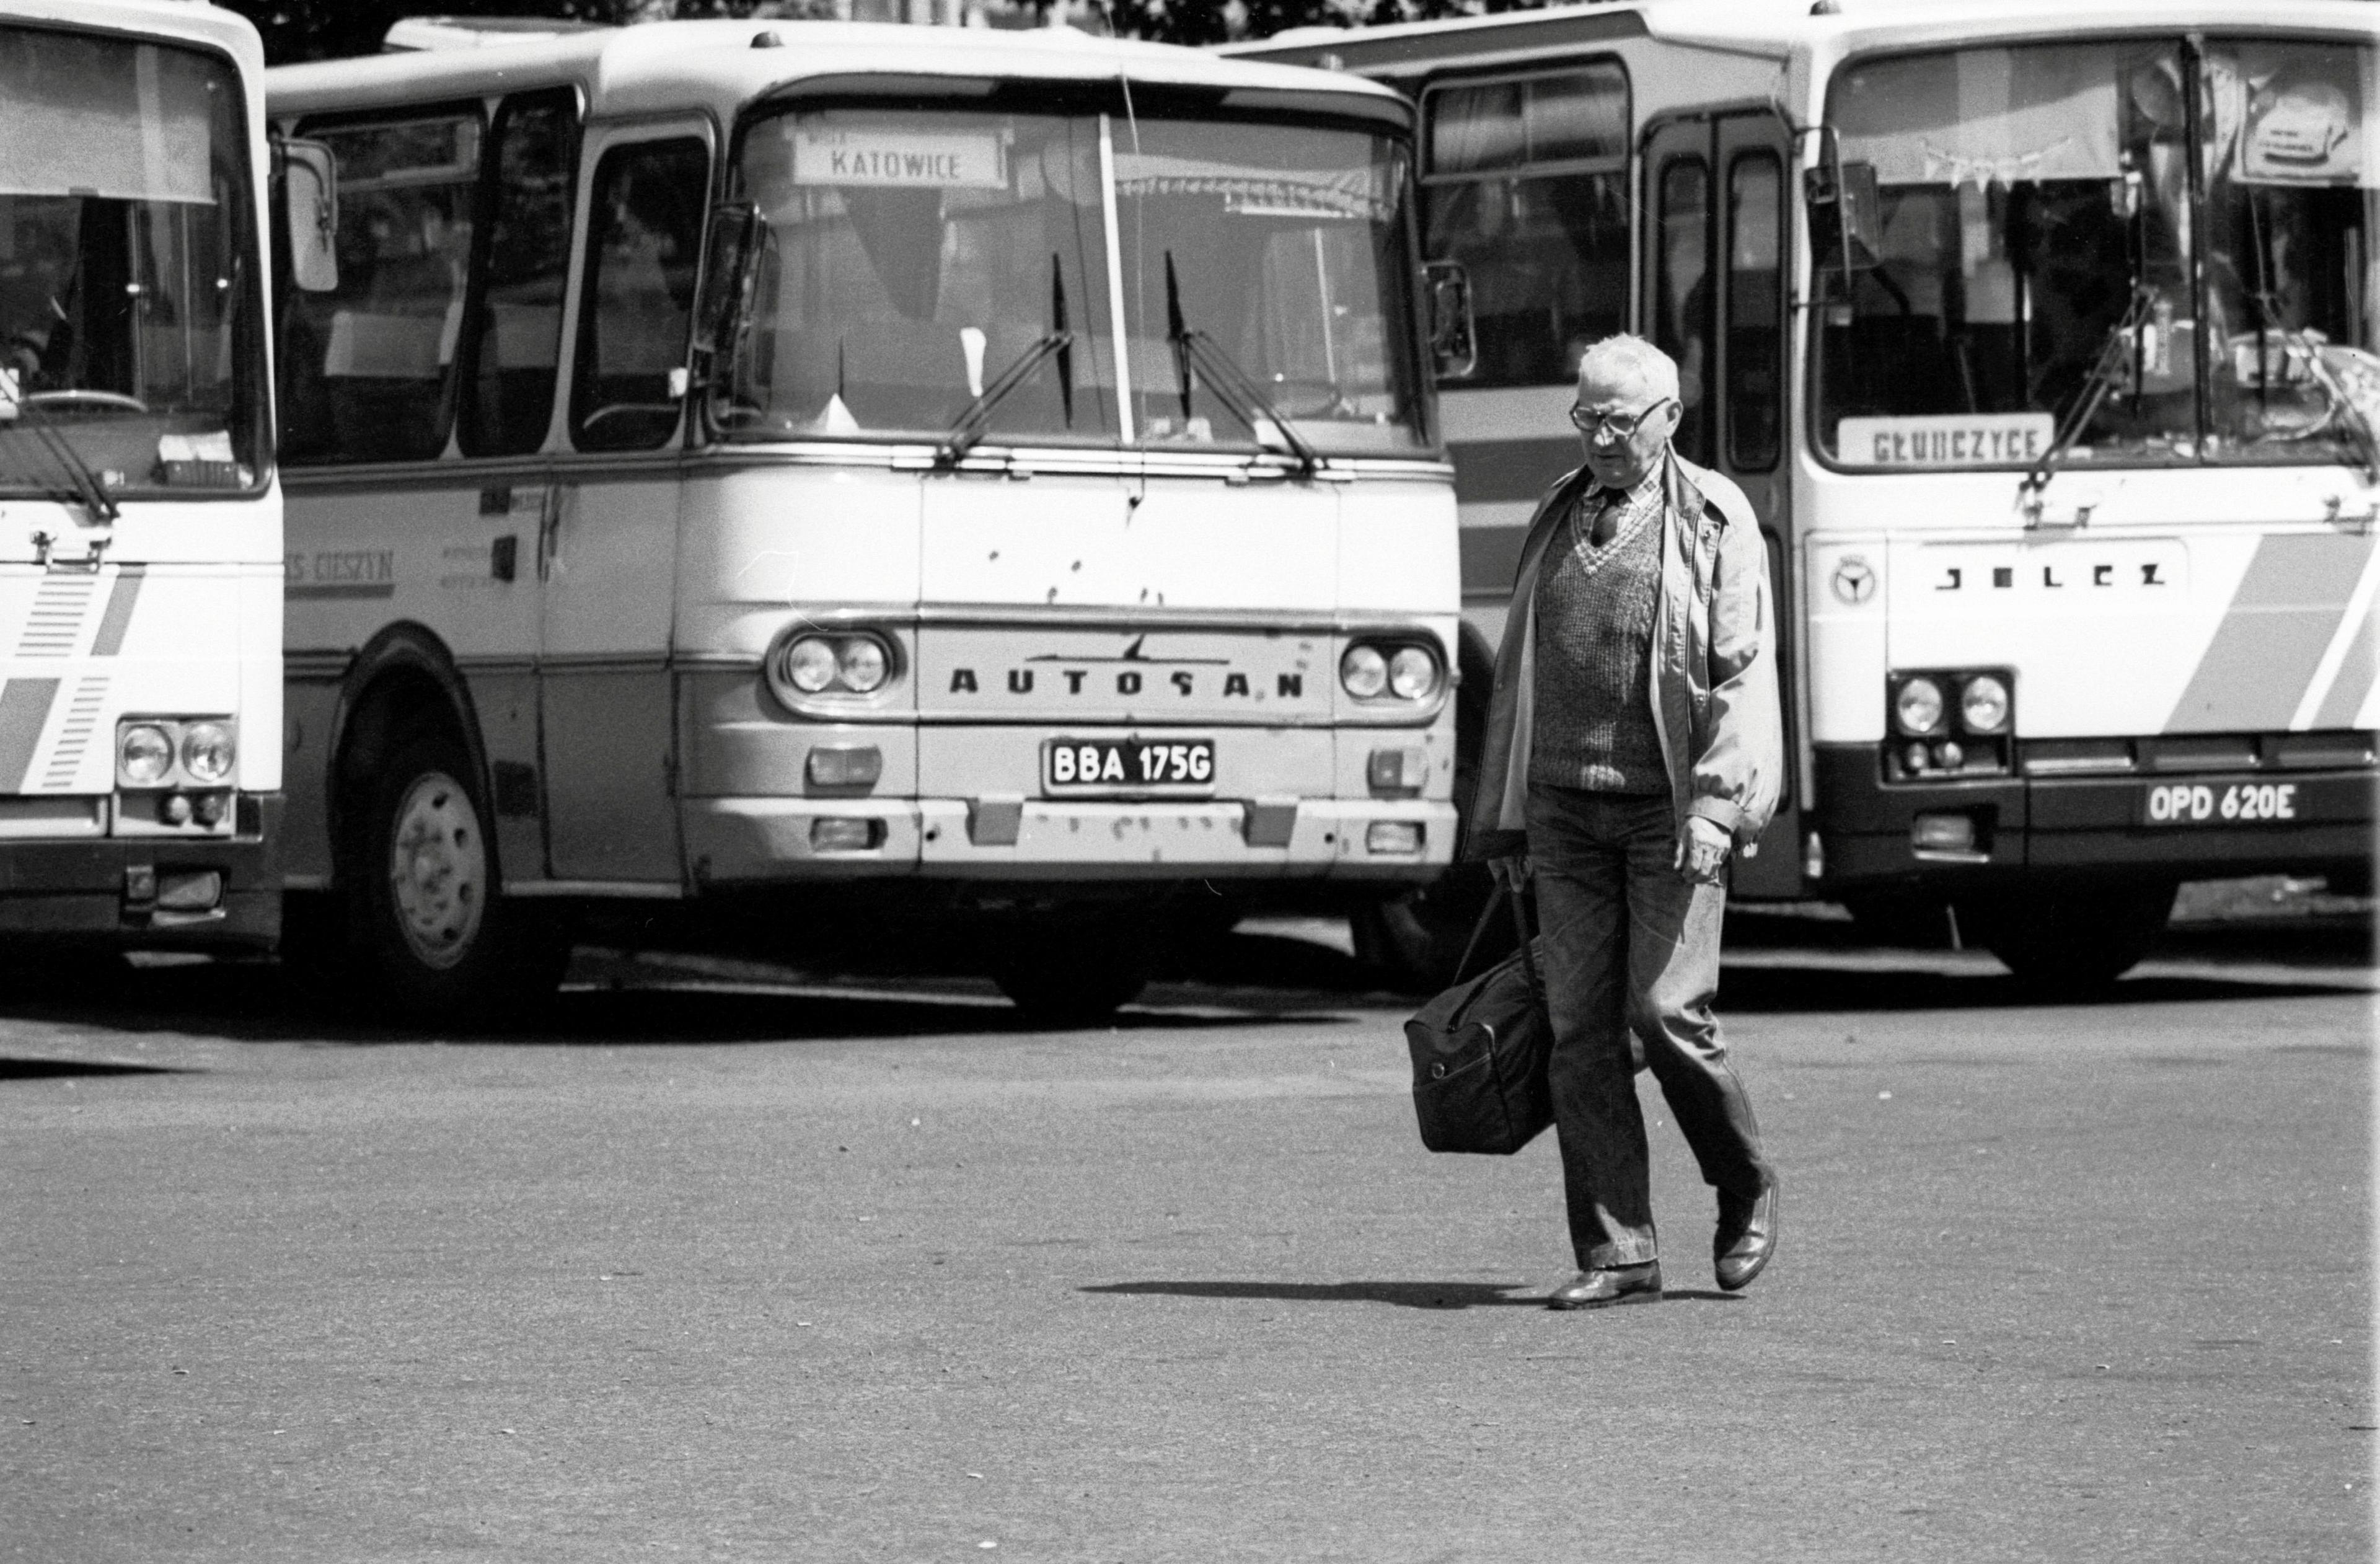 04.05.1994 Katowice , autobusy na dworcu PKS .  
Fot. Miroslaw Noworyta / Agencja Gazeta